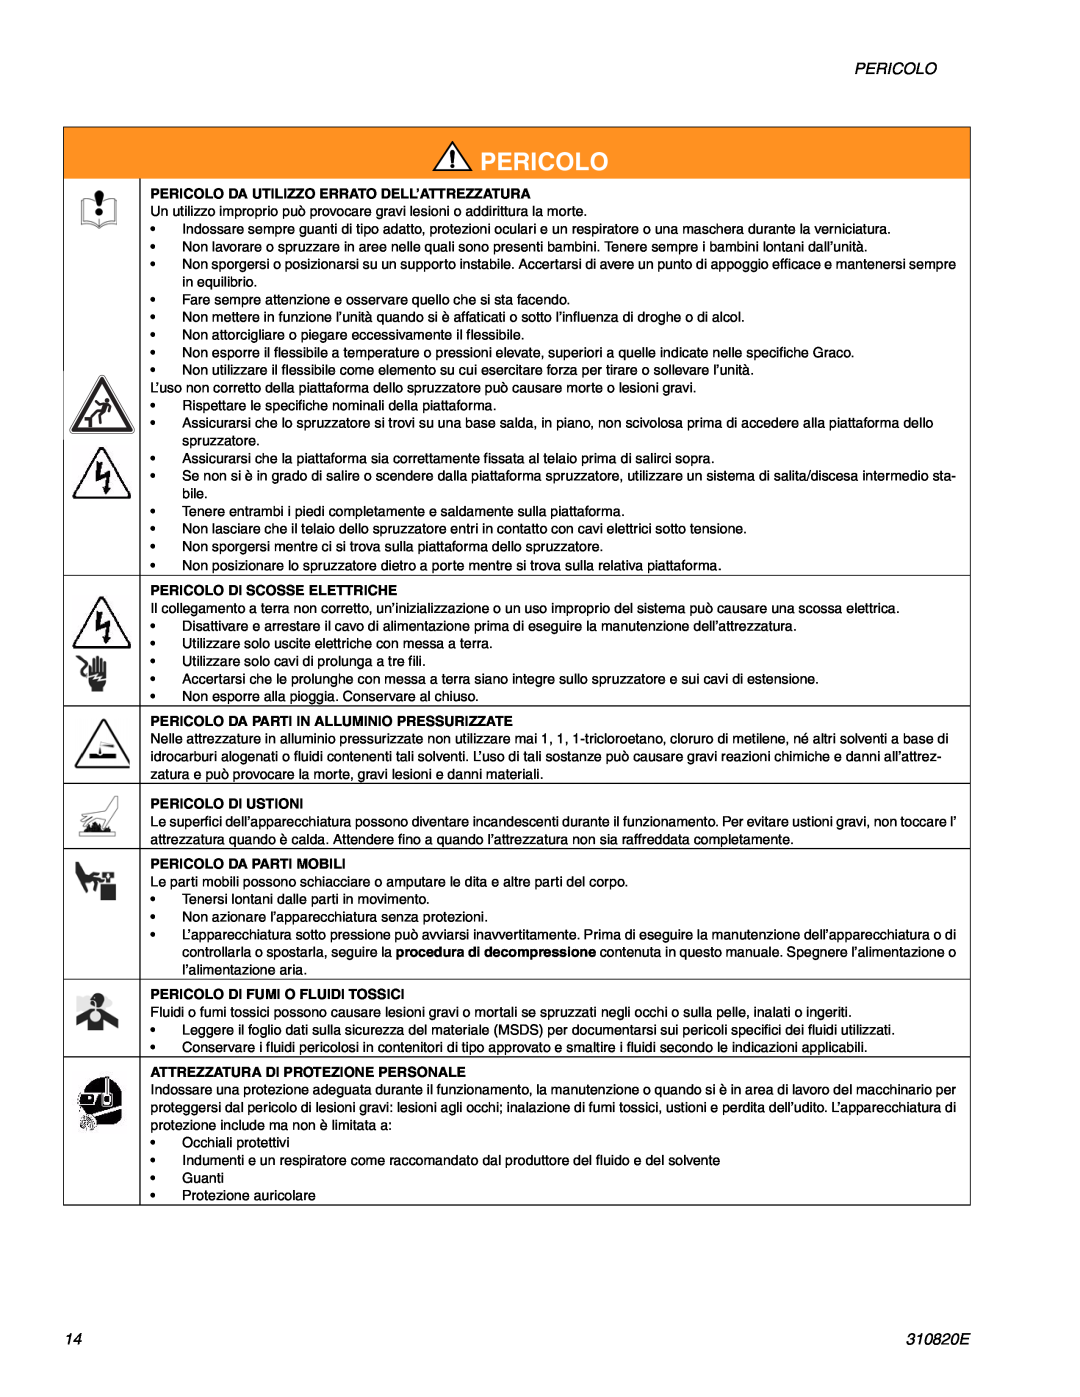 Graco Inc ti11583a Pericolo Da Utilizzo Errato Dell’Attrezzatura, Pericolo Di Scosse Elettriche, Pericolo Di Ustioni 